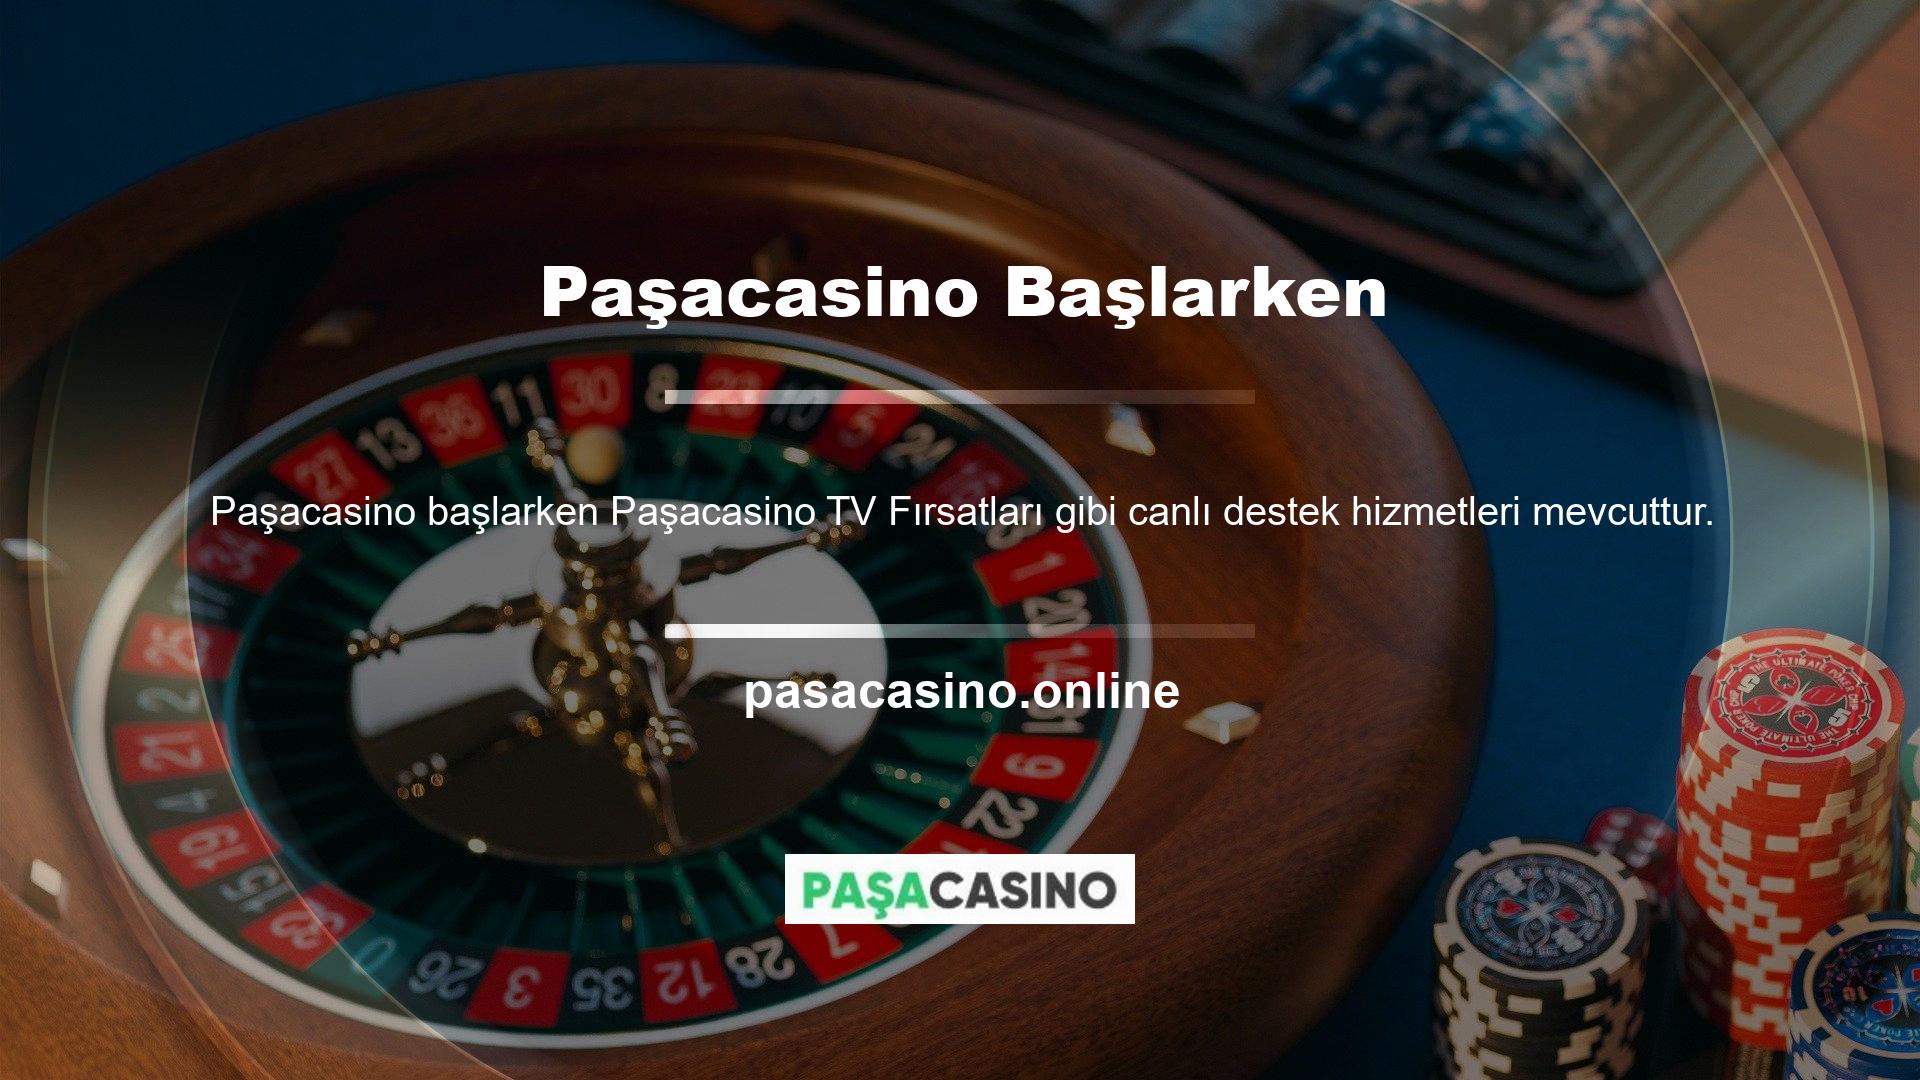 Ayrıca çevrimiçi casino ve oyun sitelerinin kullanıcıları, canlı sohbet aracılığıyla Paşacasino anında destek alabilirler